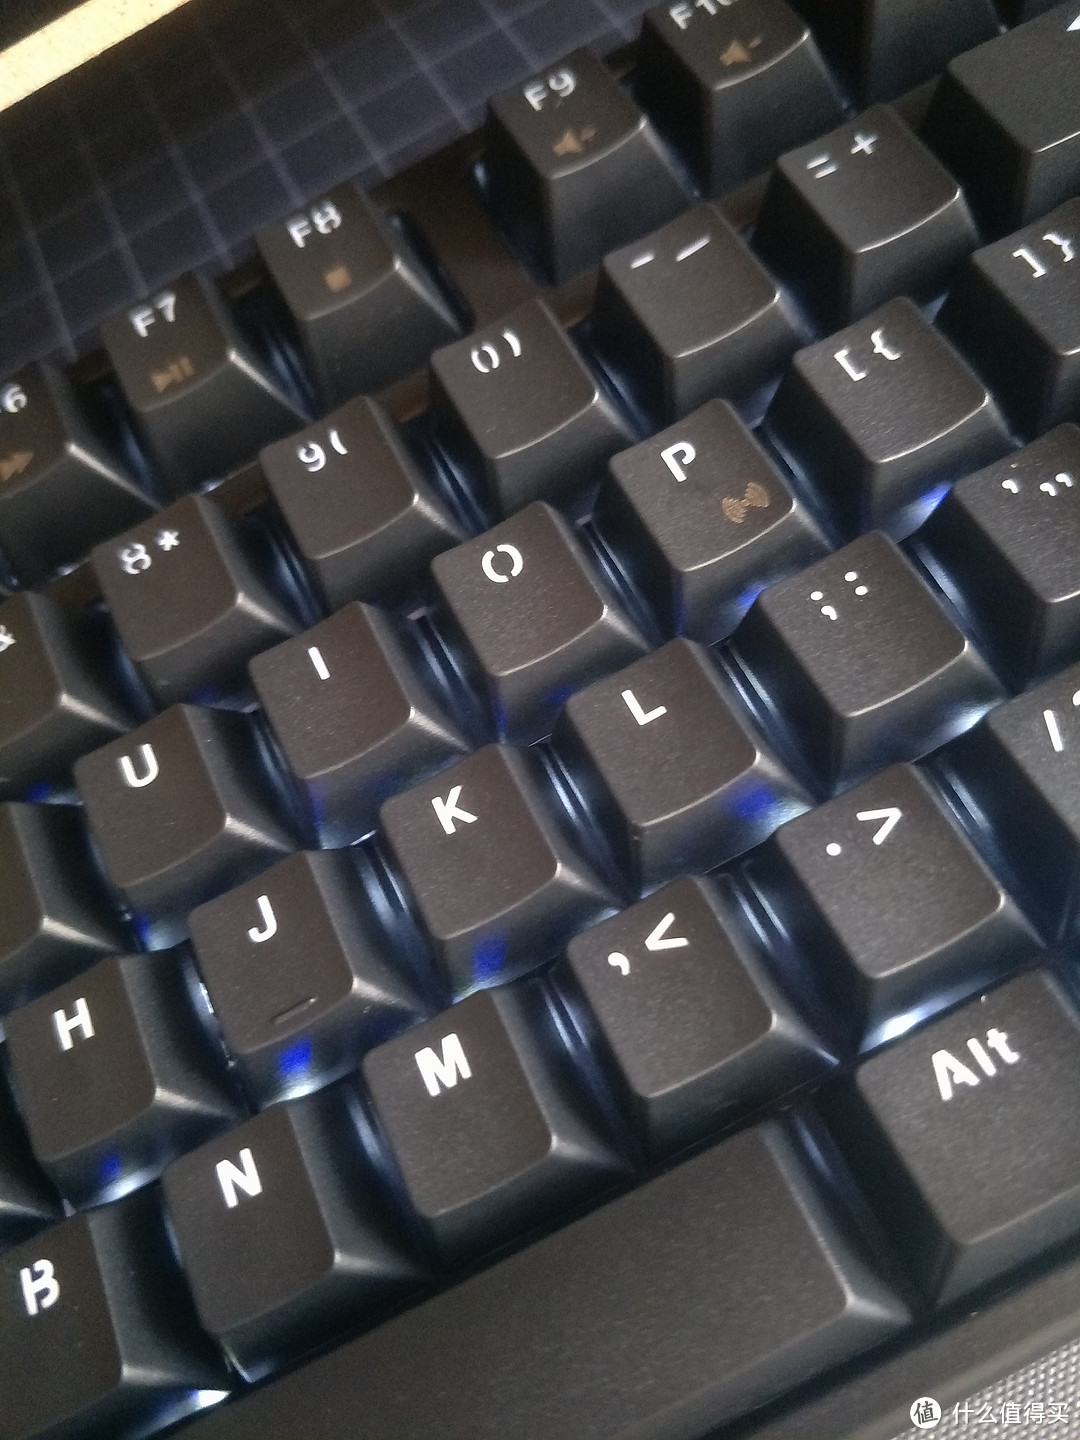 第一款机械键盘——RK987蓝牙双模机械键盘体验